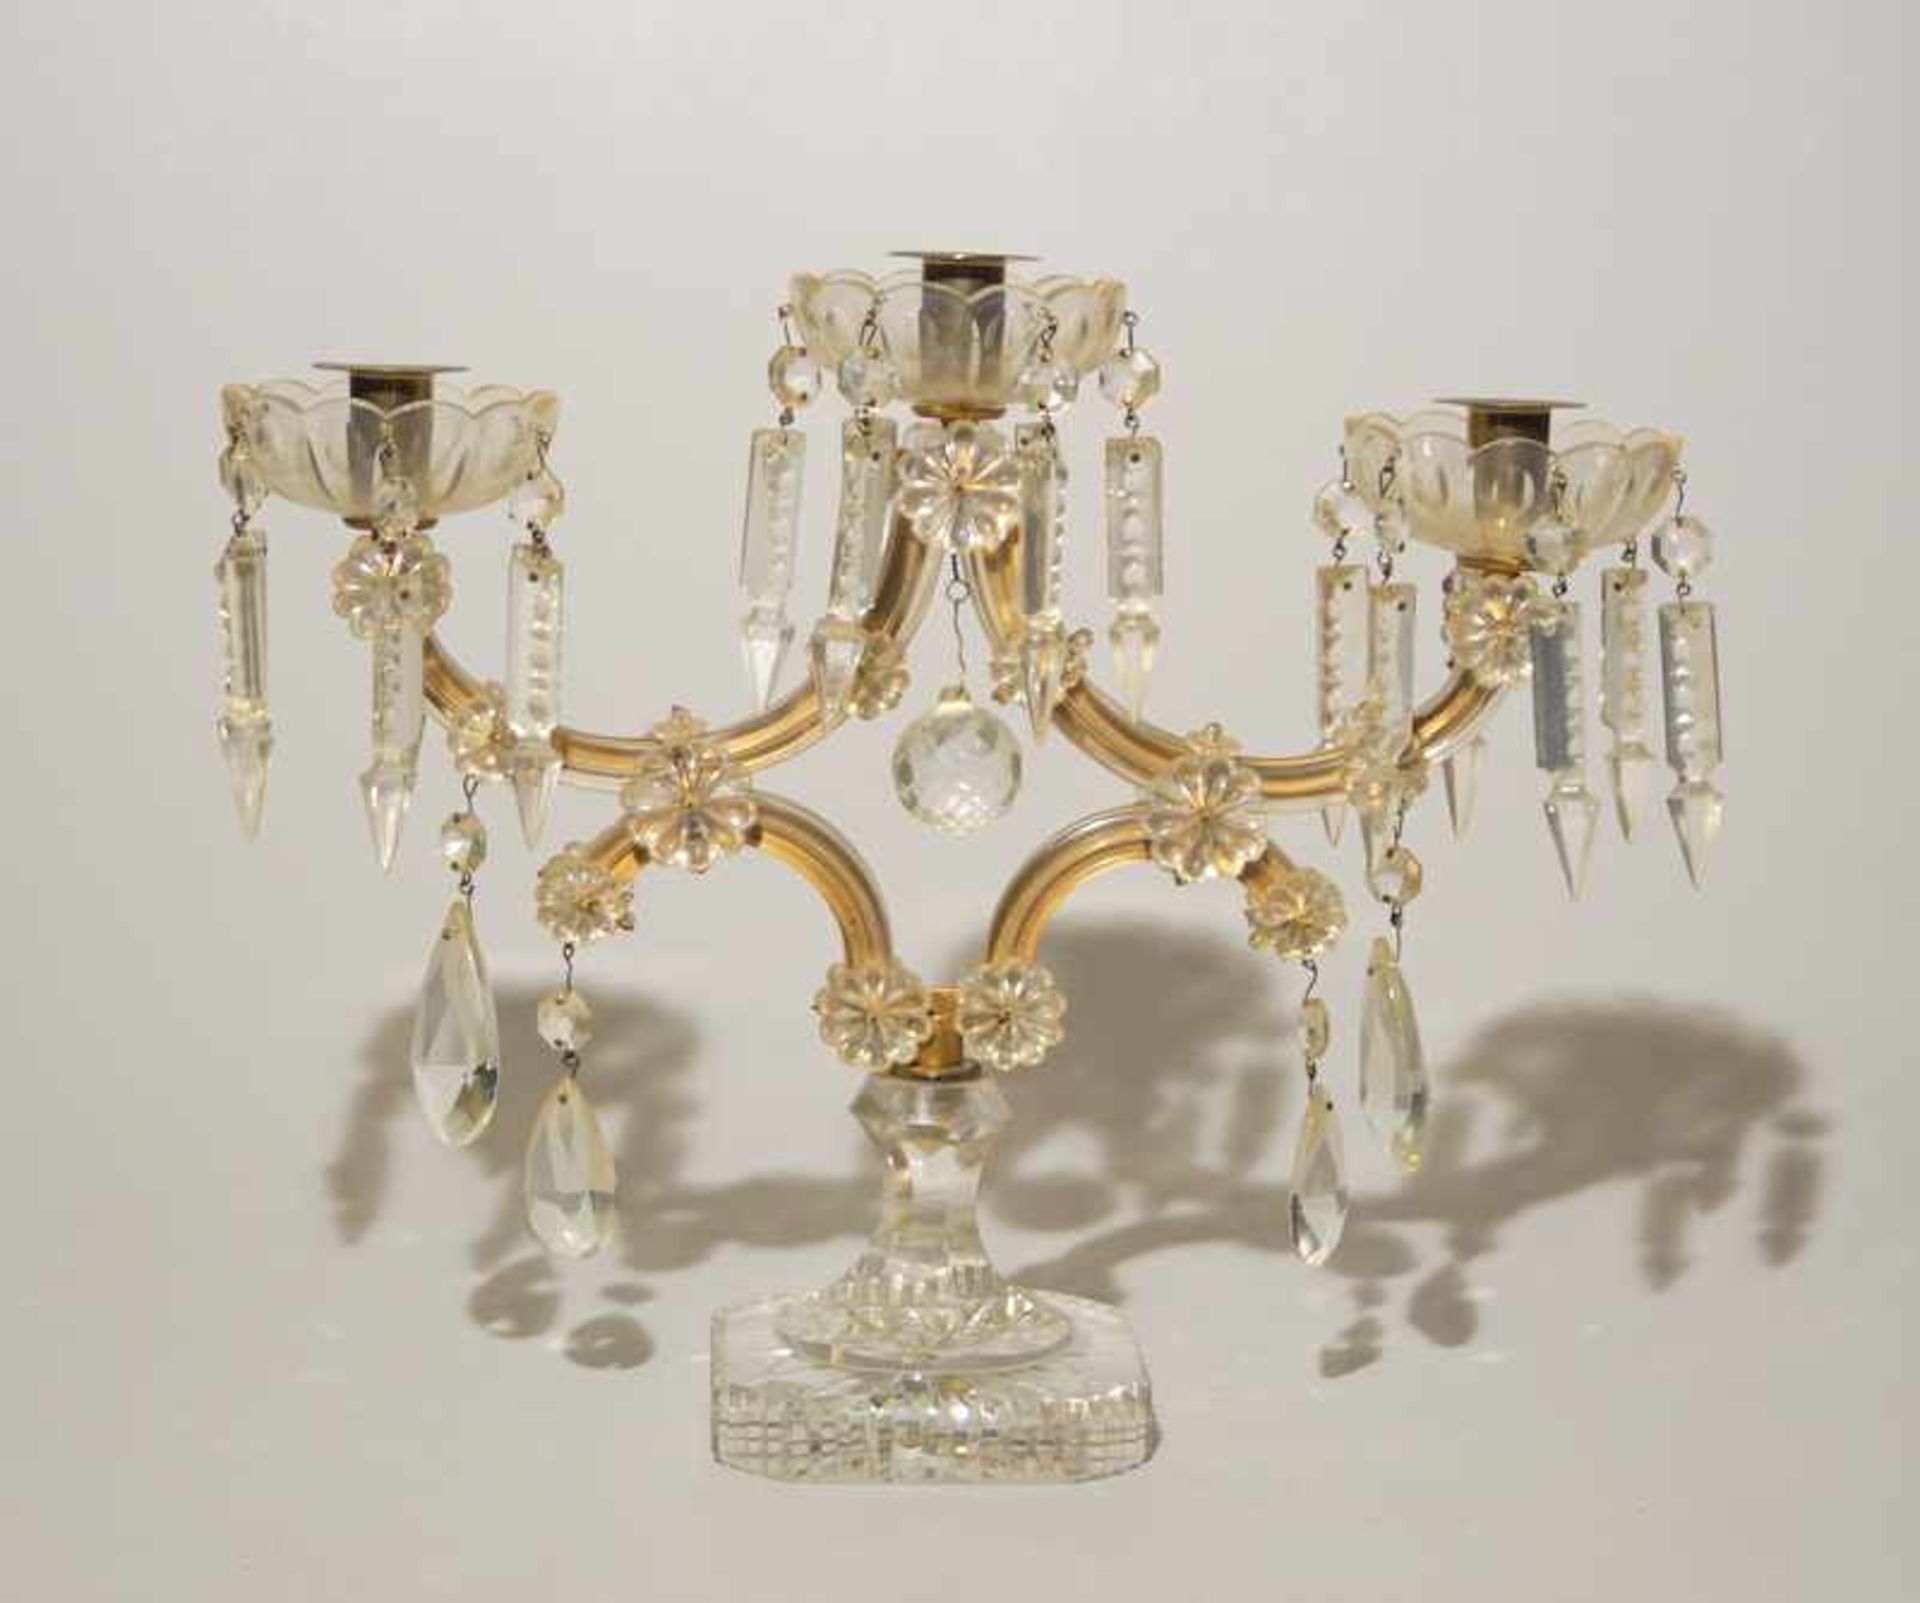 Großer Kandelaber im Maria-Theresia-Stilfarbloses Kristallglas mit Schliffdekor, 3 Brennstellen